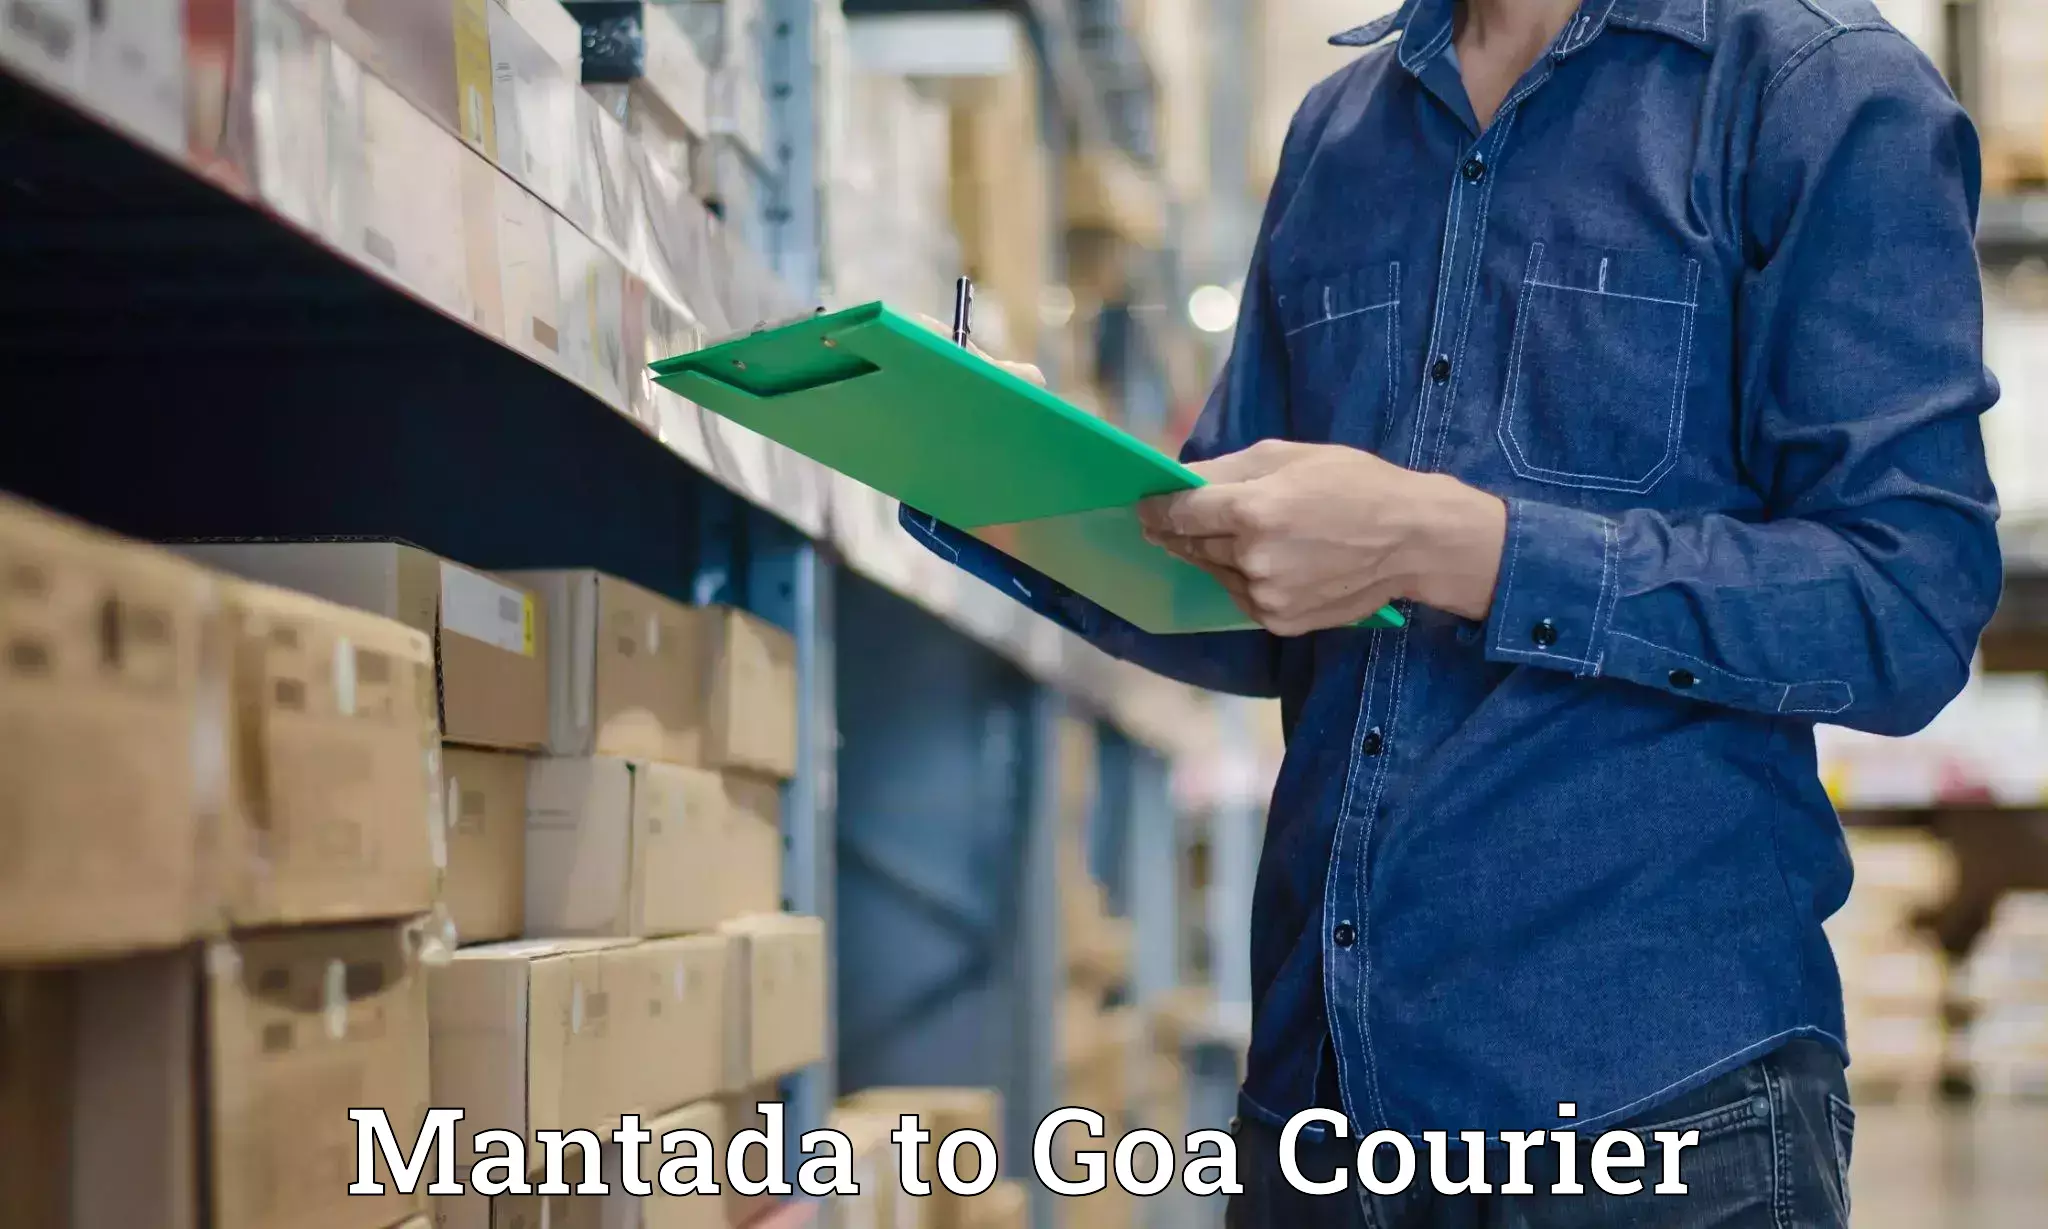 Ocean freight courier Mantada to IIT Goa